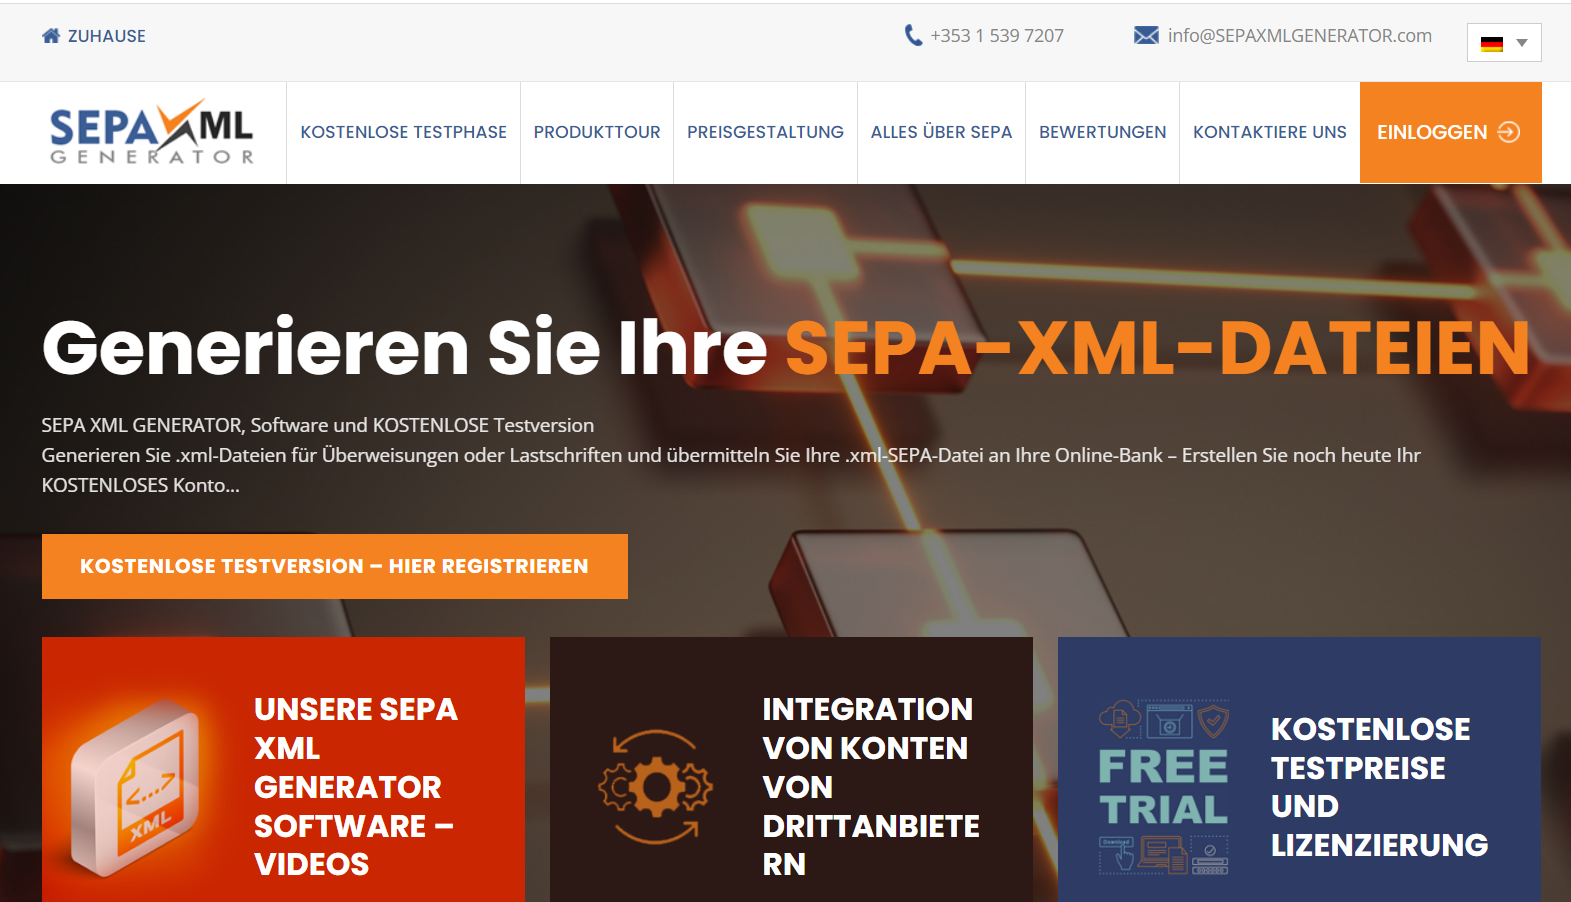 SEPA XML GENERATOR ahora en alemán